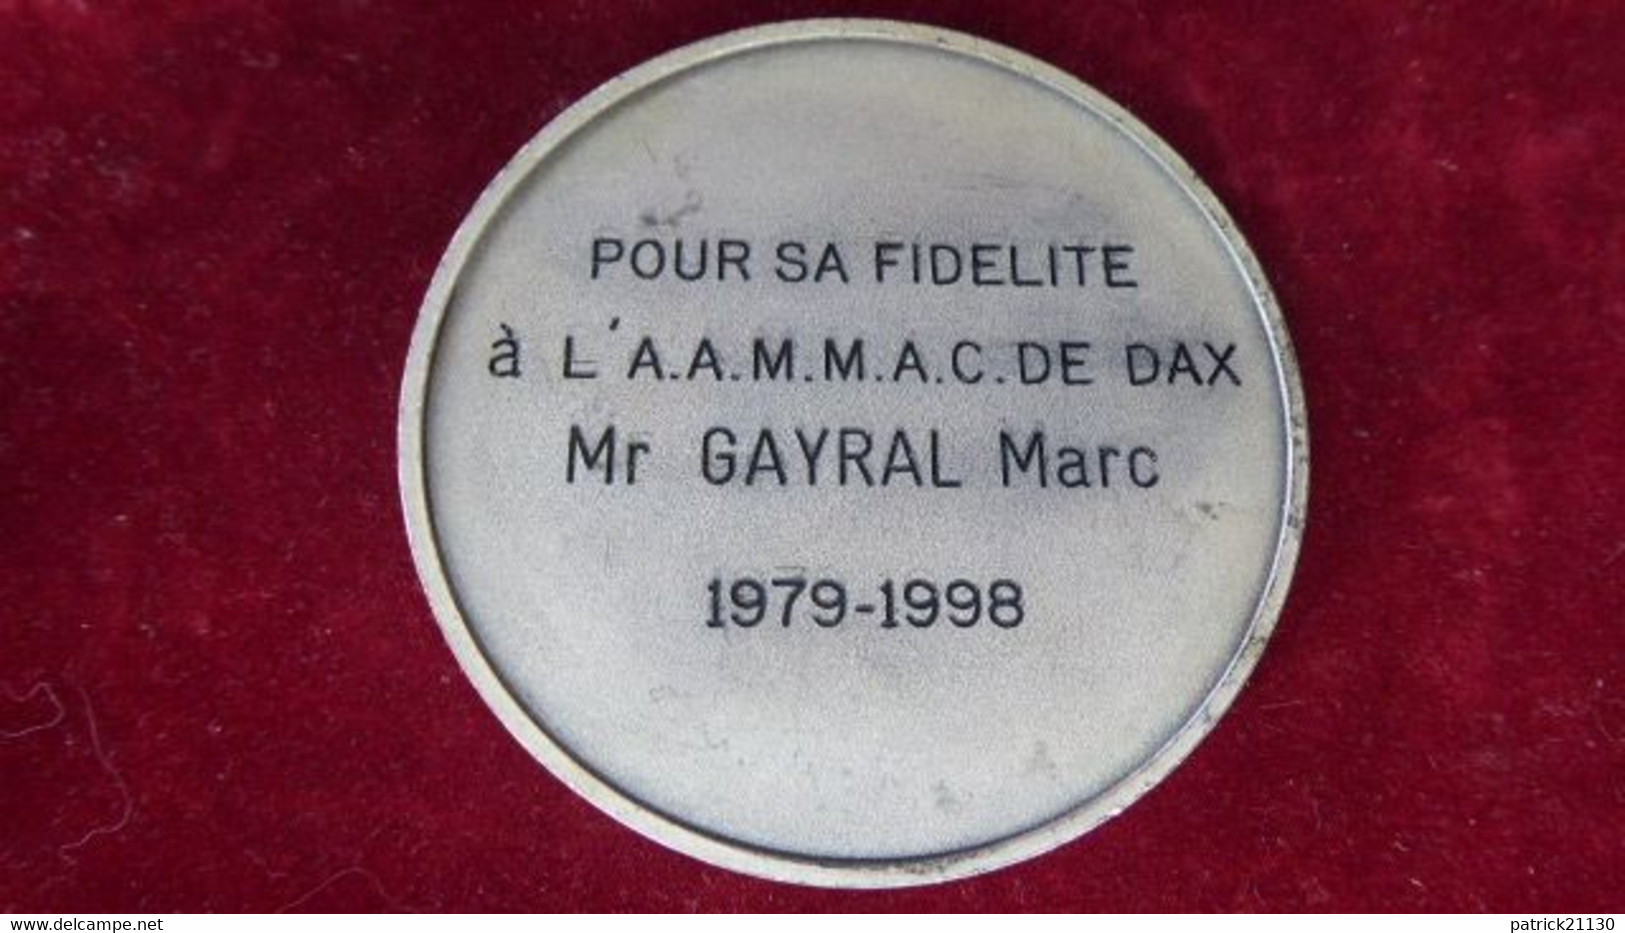 MEDAILLE ANCRE MARINE DECERNEE DAX 1998 - Professionnels / De Société